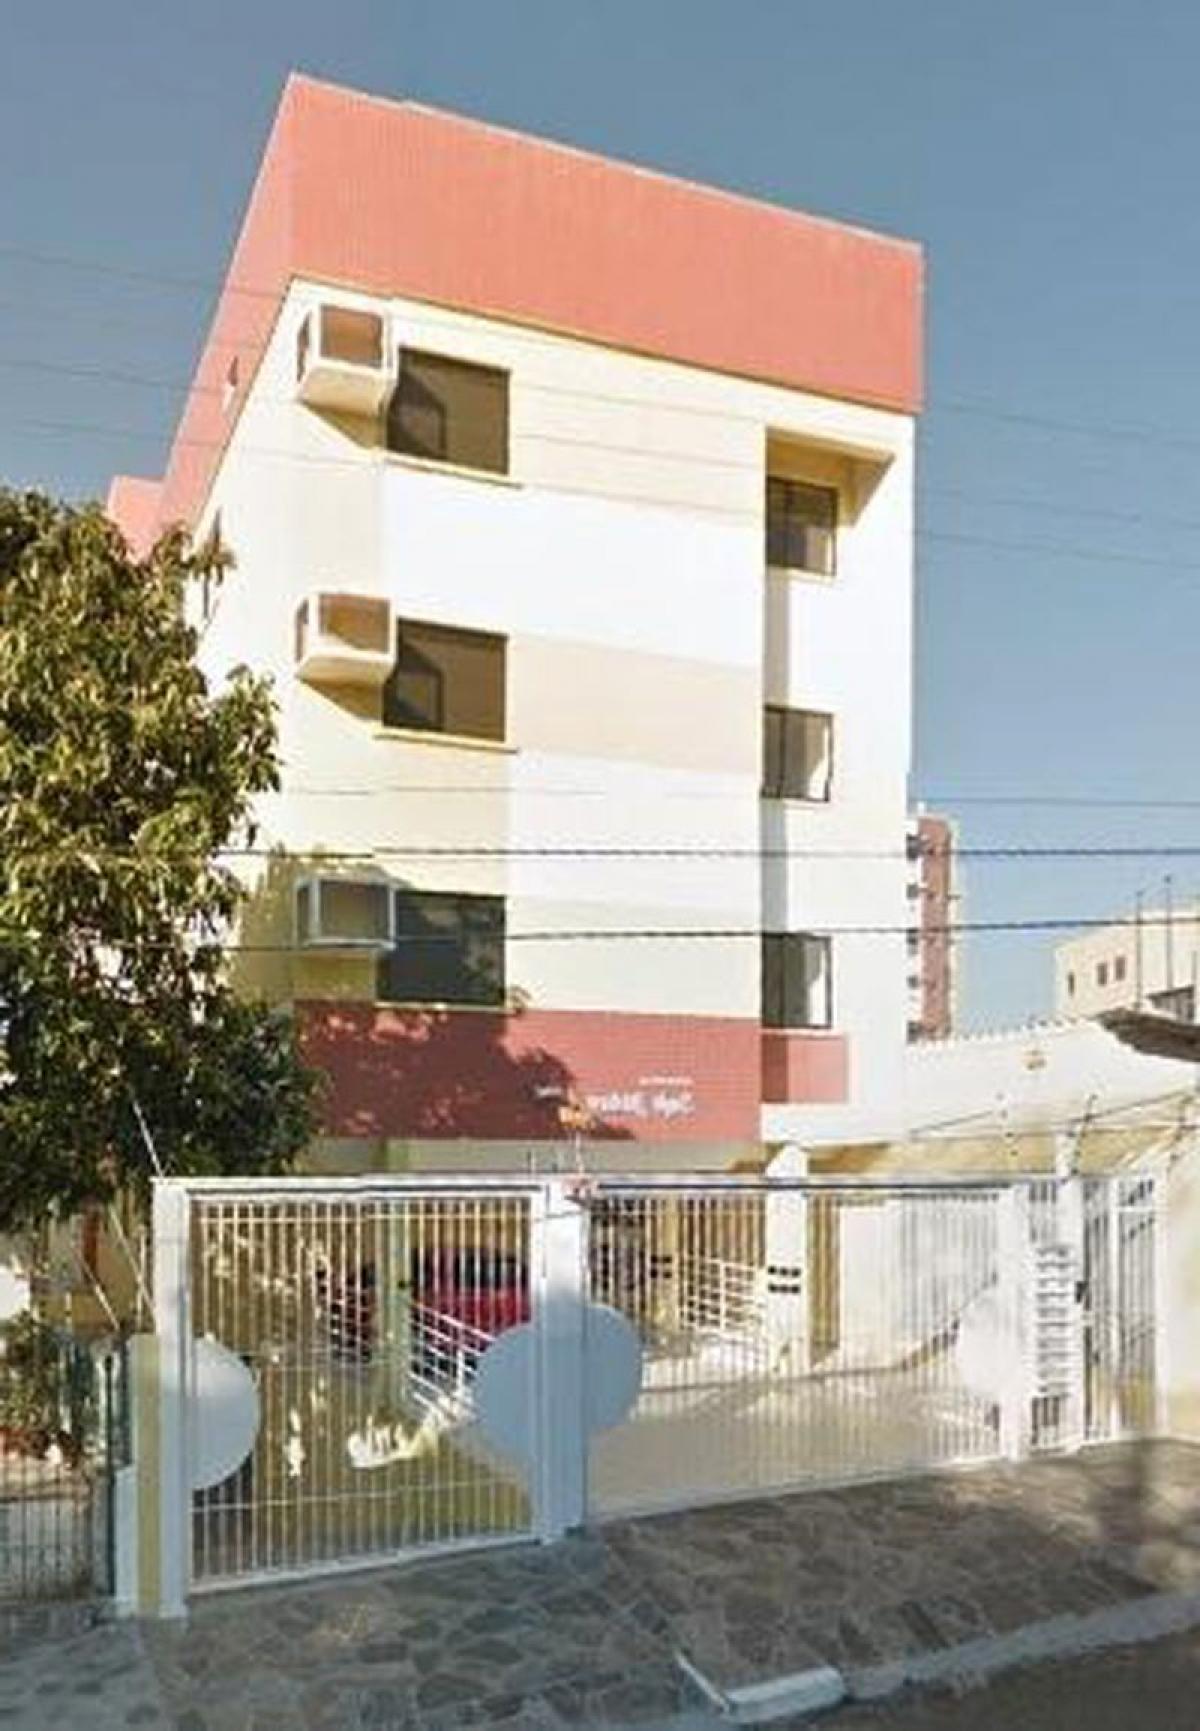 Picture of Apartment For Sale in Santa Maria, Rio Grande do Norte, Brazil